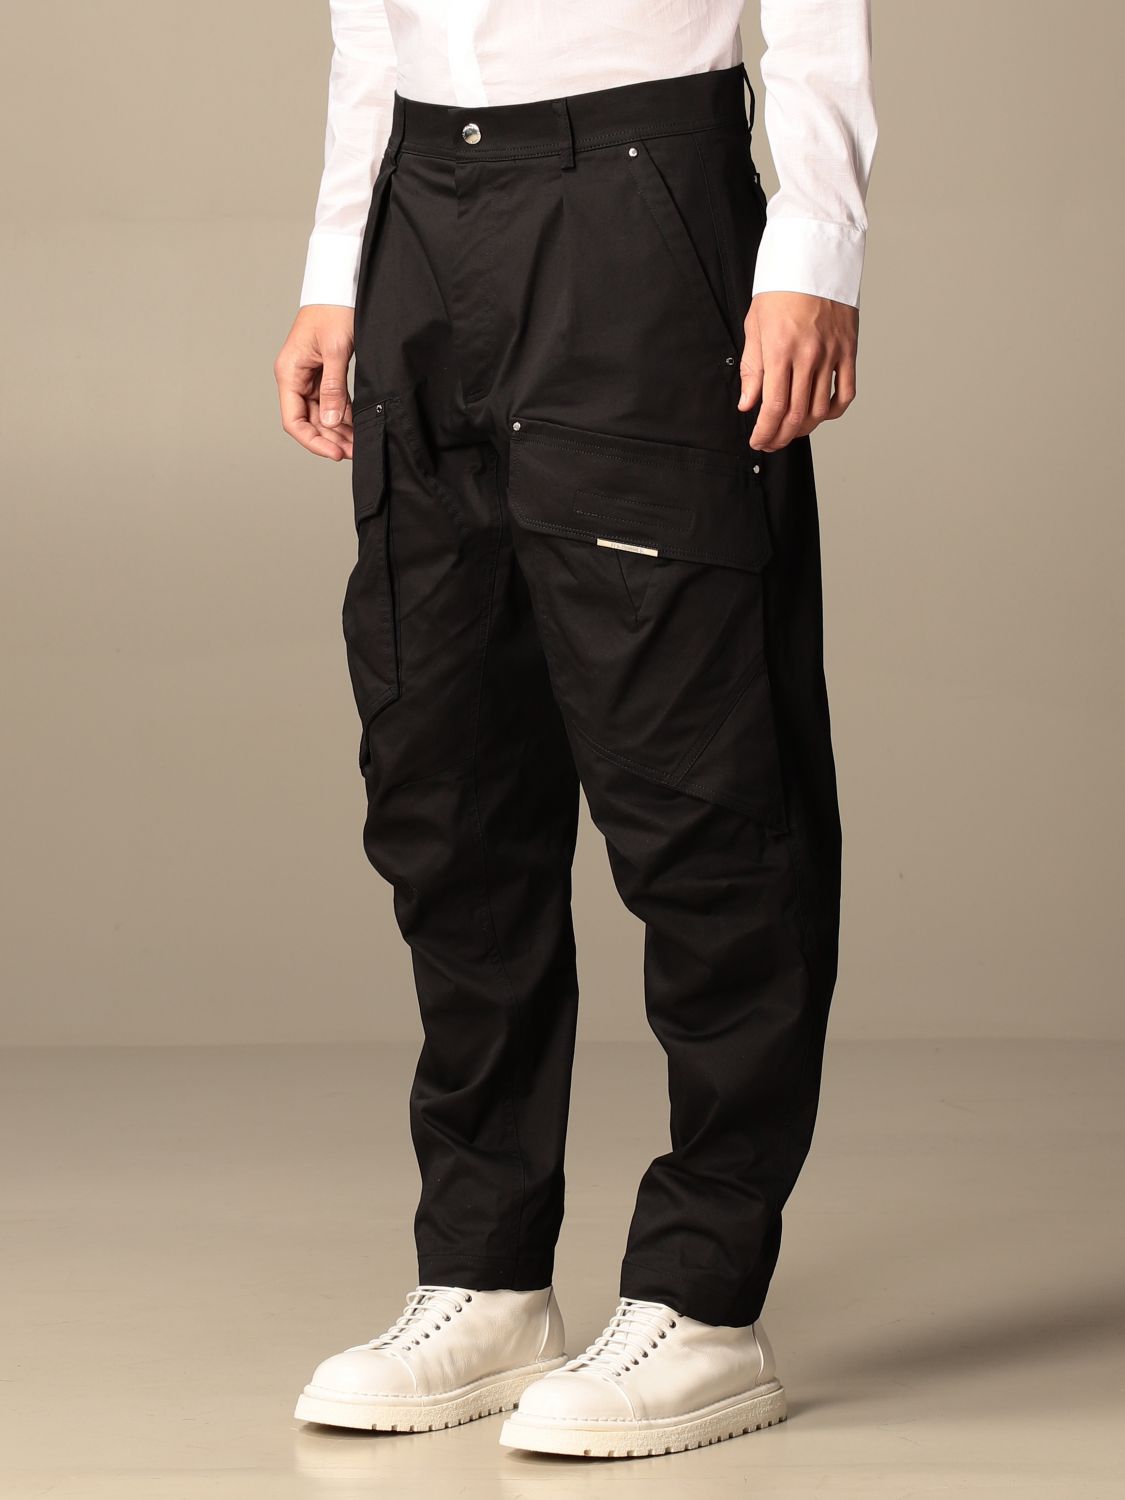 Pants Les Hommes: Les Hommes men's trousers black 4